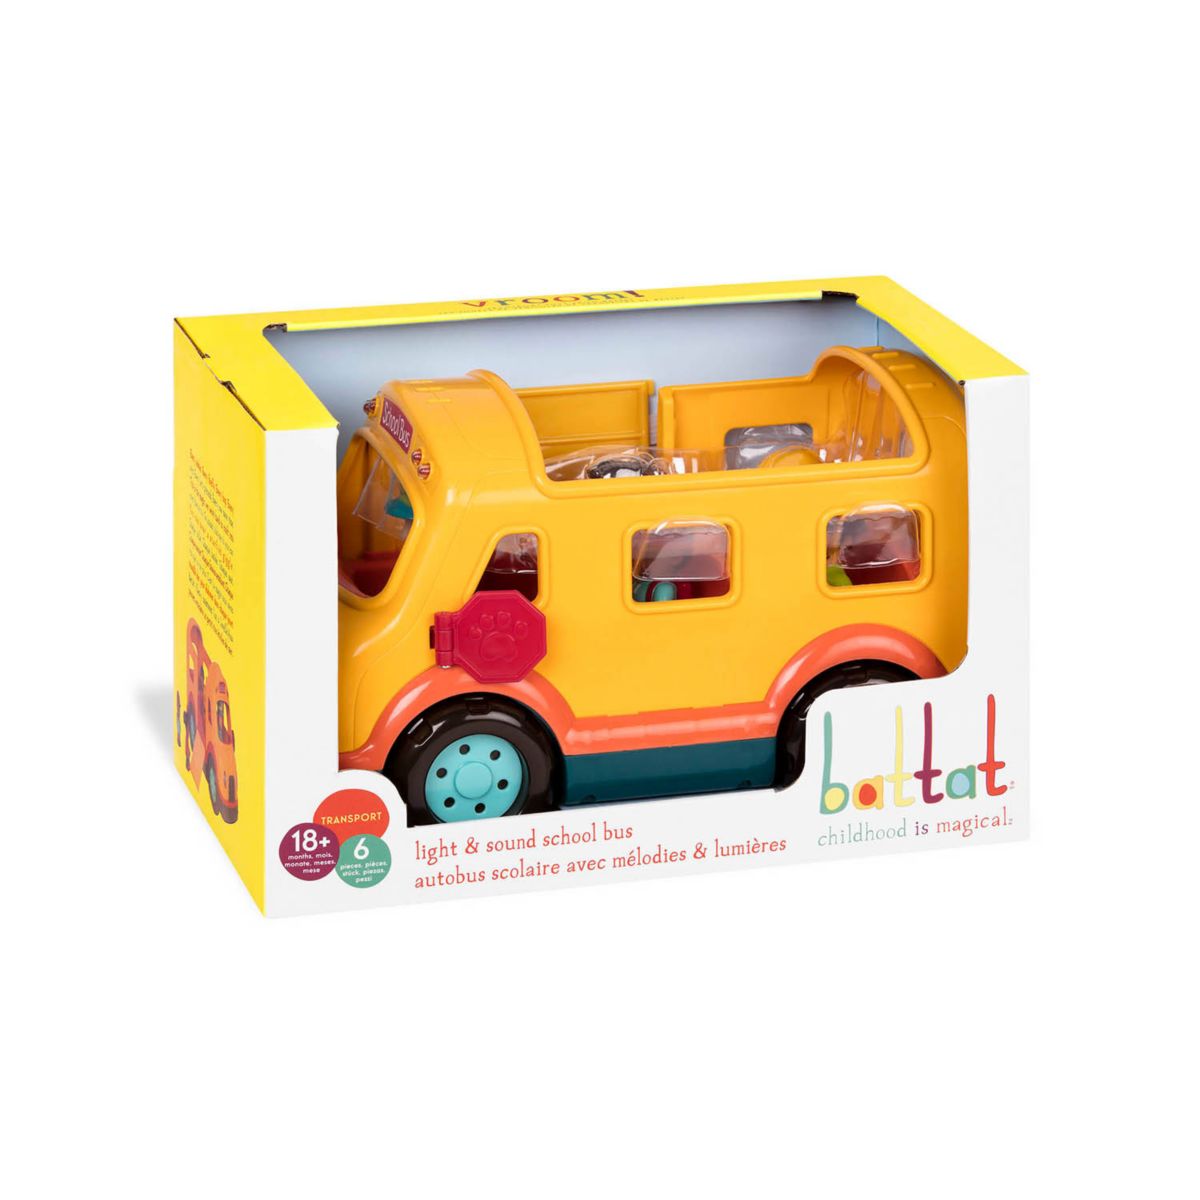 Обучающая игрушка для школьного автобуса Battat со светом и звуком Battat